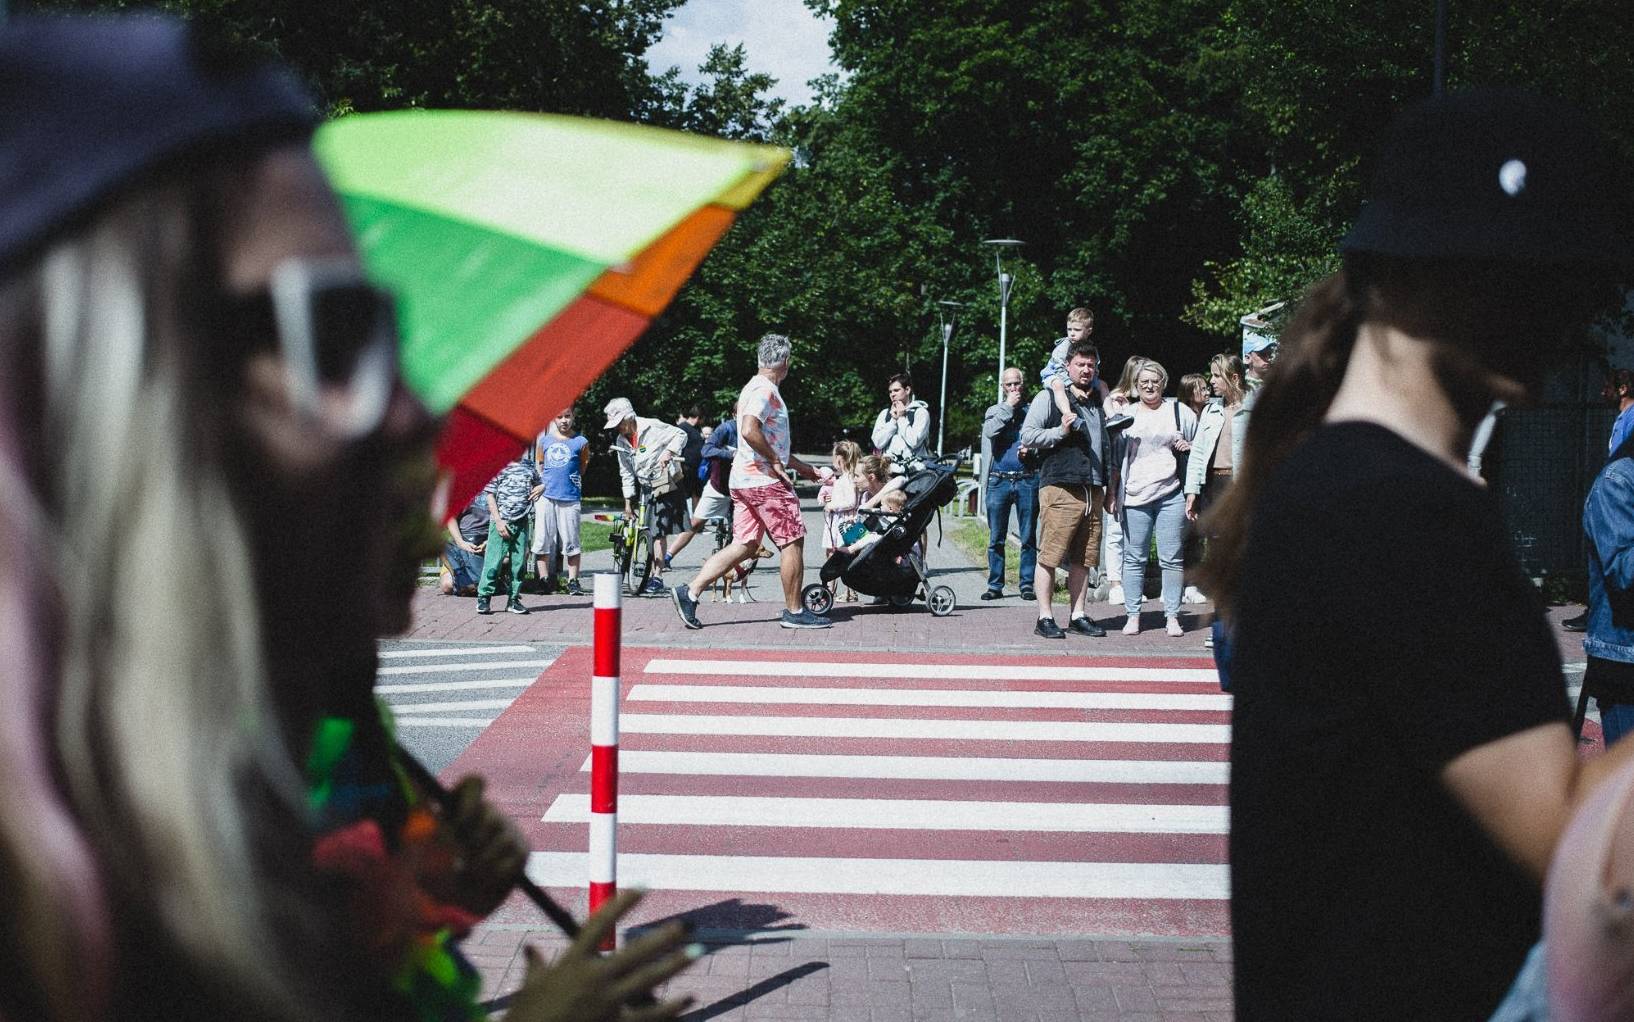 Grafika do artykułu Kto wspiera LGBT? Na prowincji tęczowa flaga skłóca jak barwy klubowe, ale Polacy są bardziej życzliwi niż się wydaje